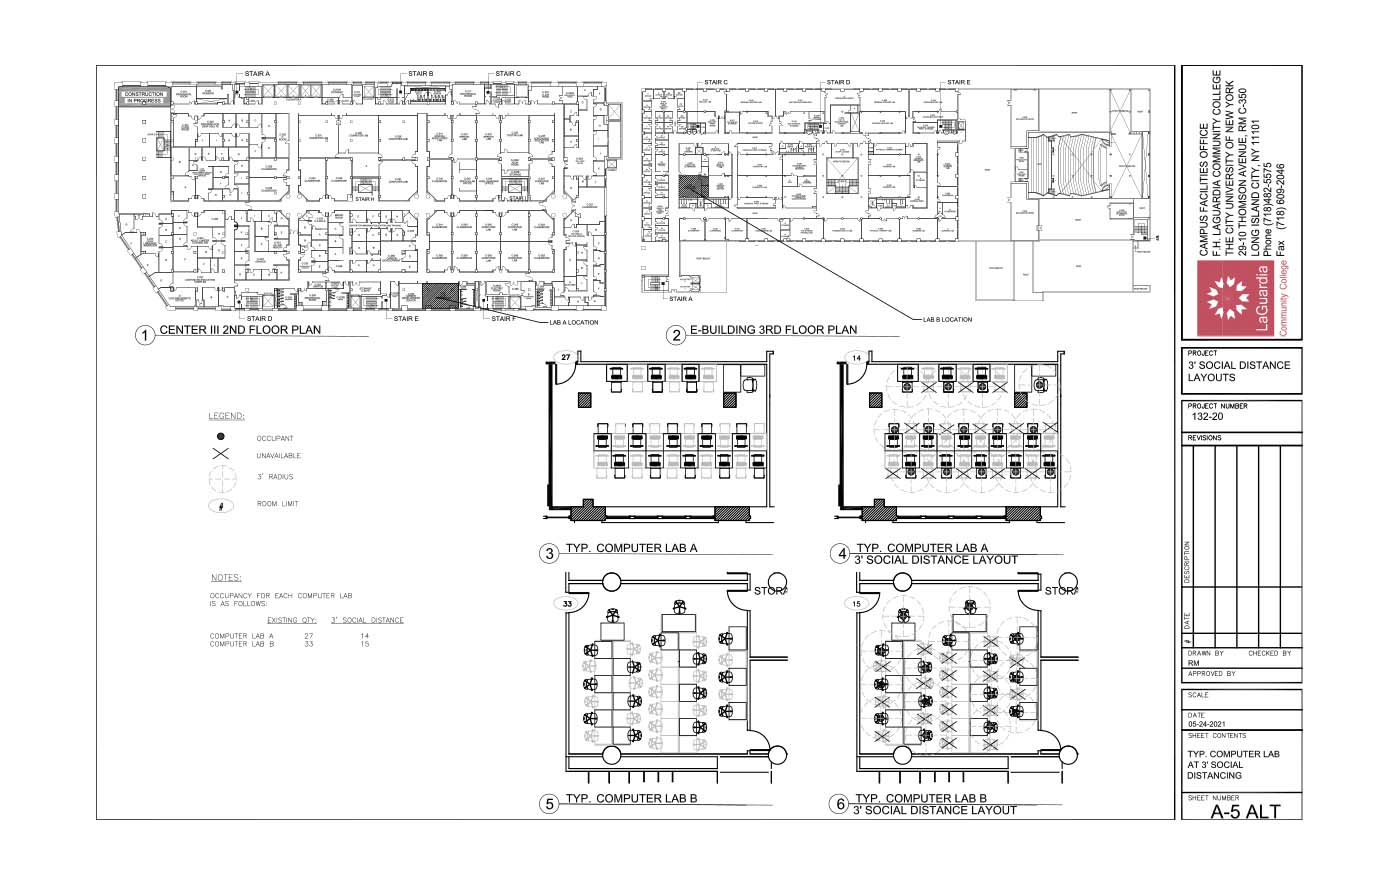 LaGuardia's campus facilities_centerIII 1st floor_Shenker hall 1st floor plan